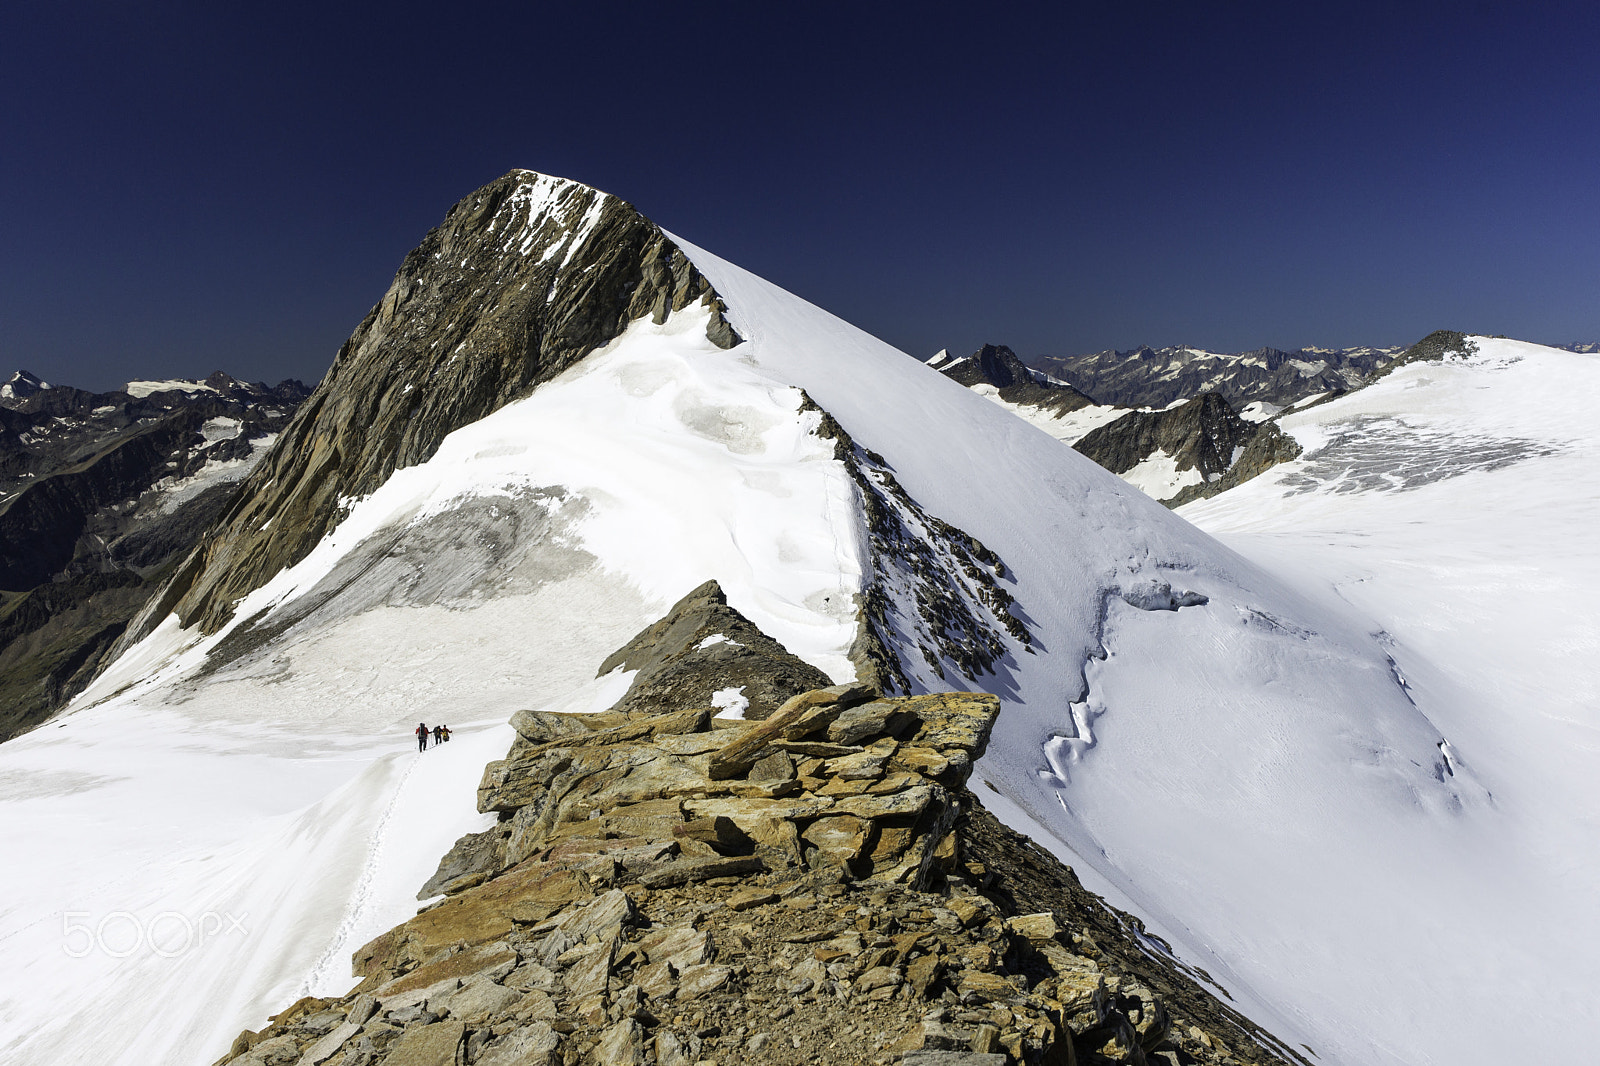 Sony Alpha DSLR-A850 sample photo. Rainerhorn (3559 m) in the austrian alps photography